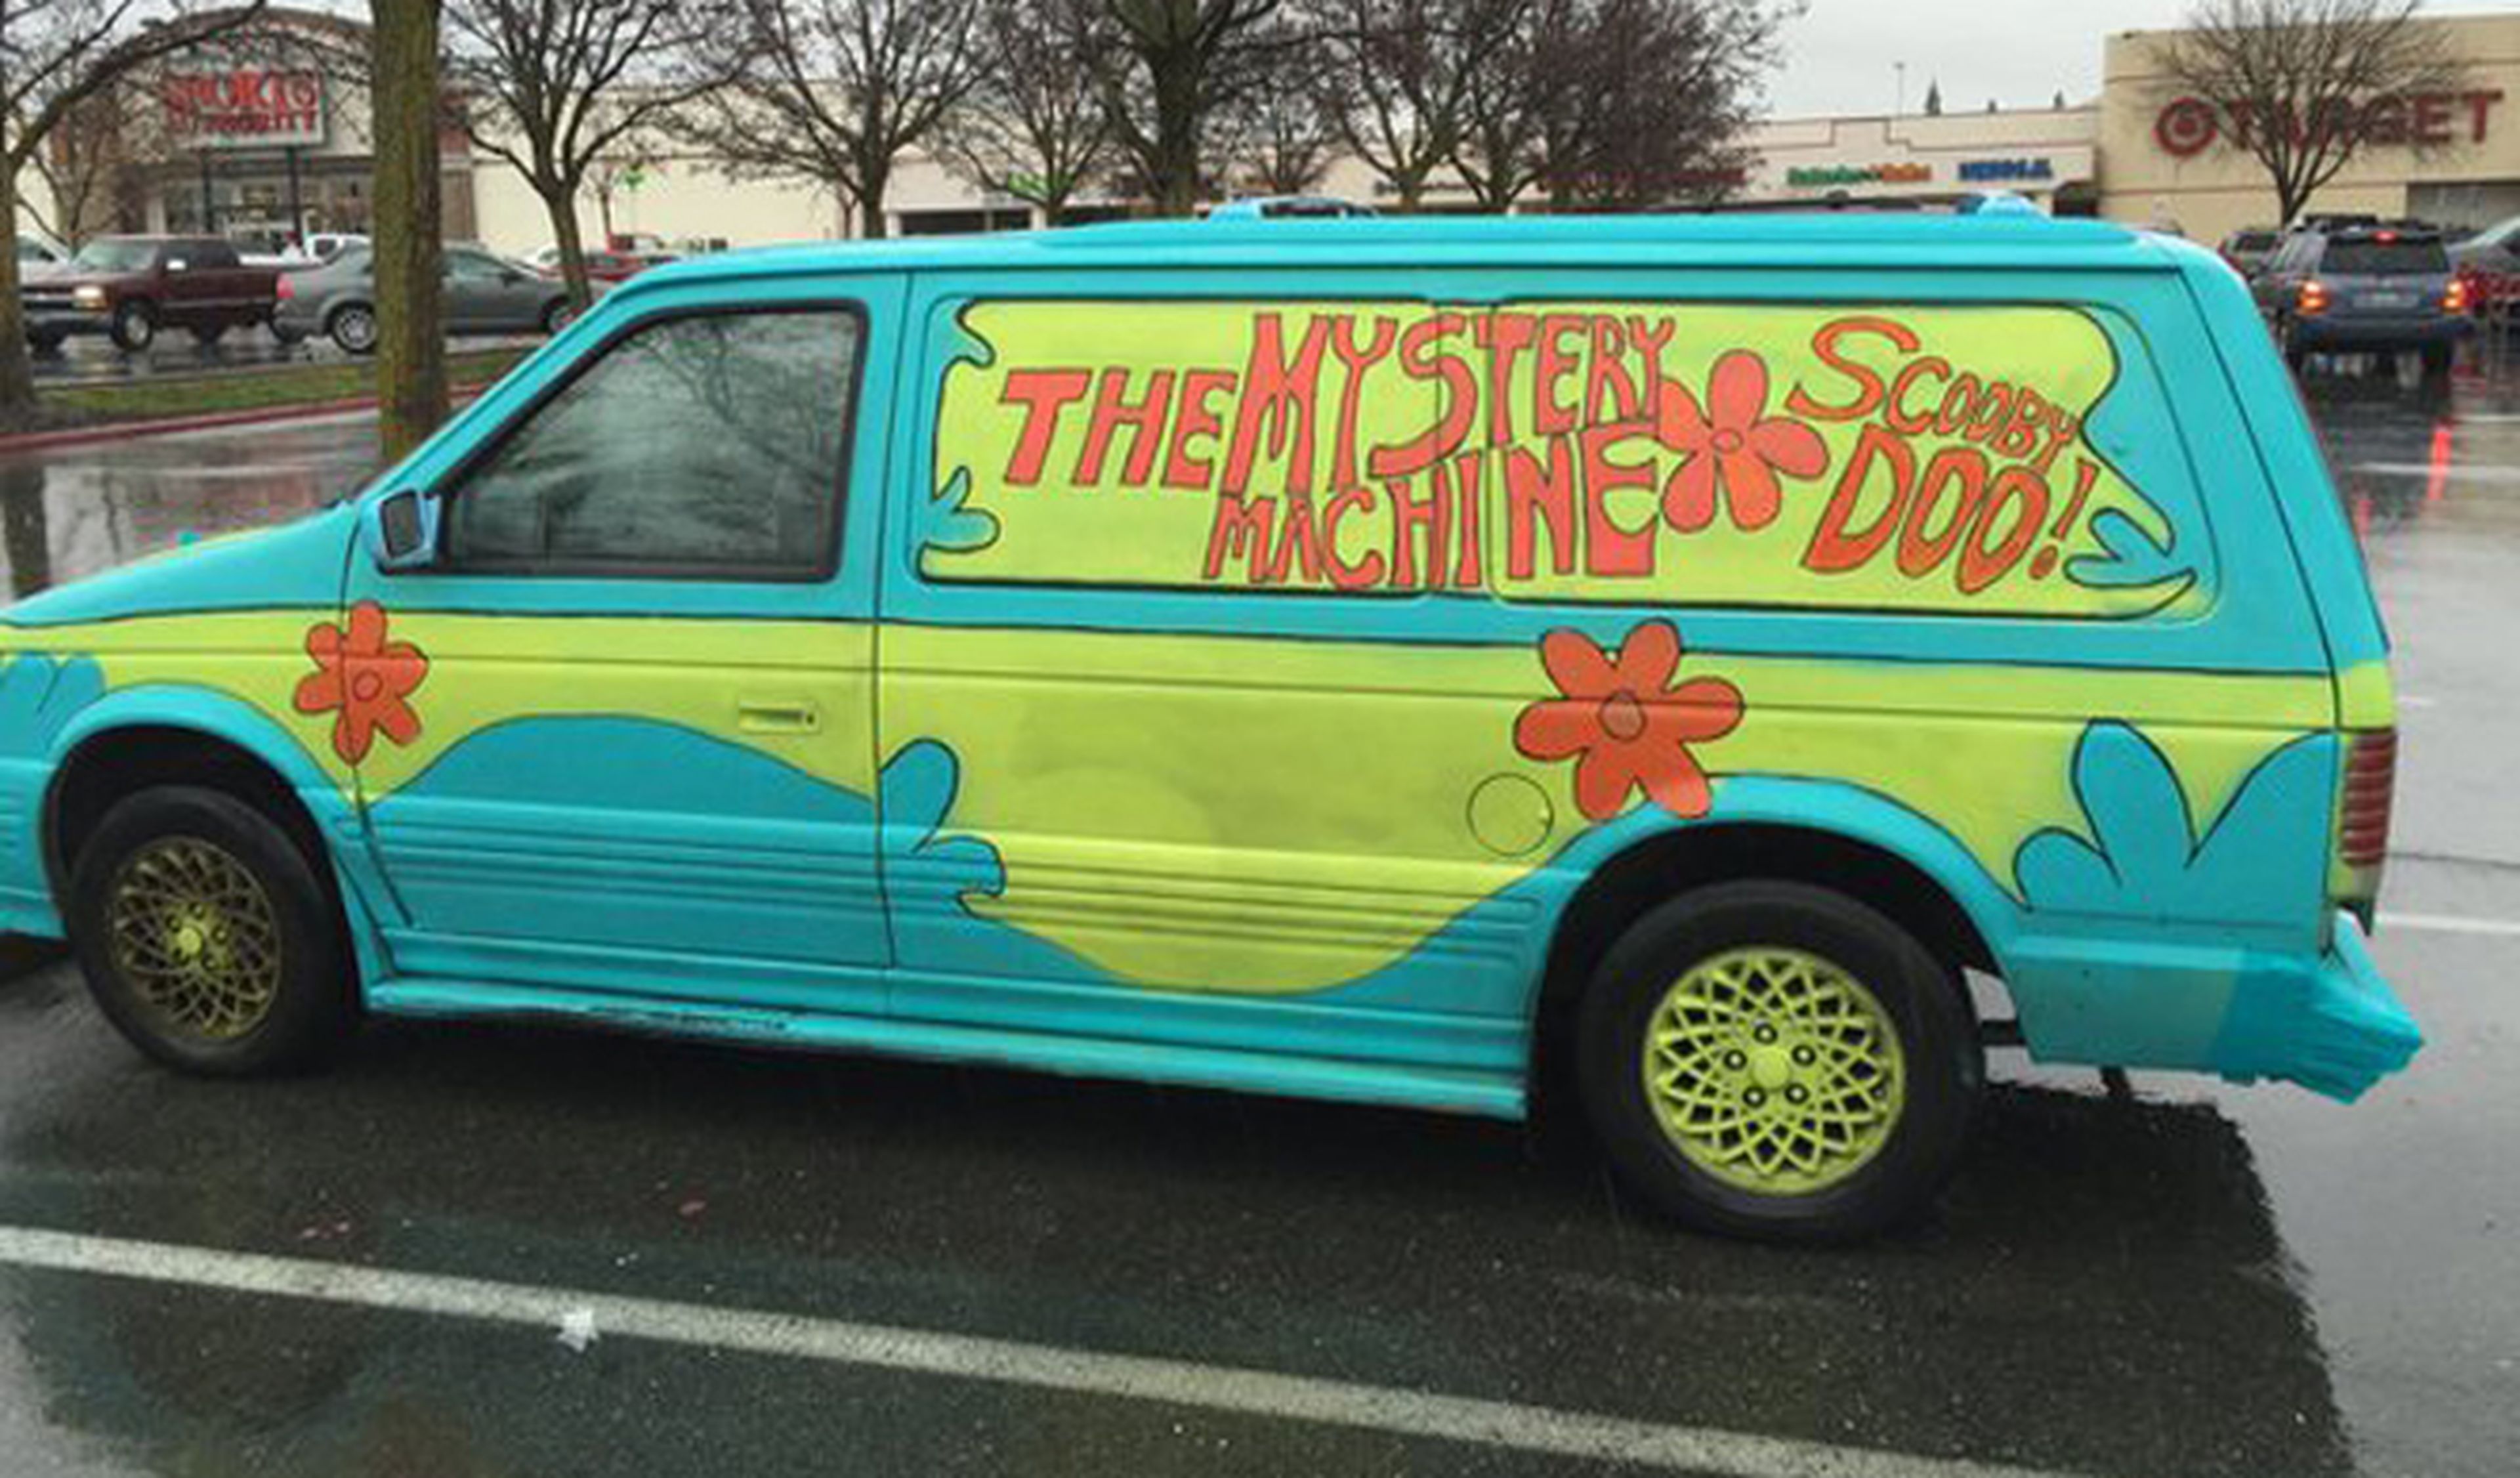 Se da a la fuga con una furgoneta como la de ‘Scooby Doo’